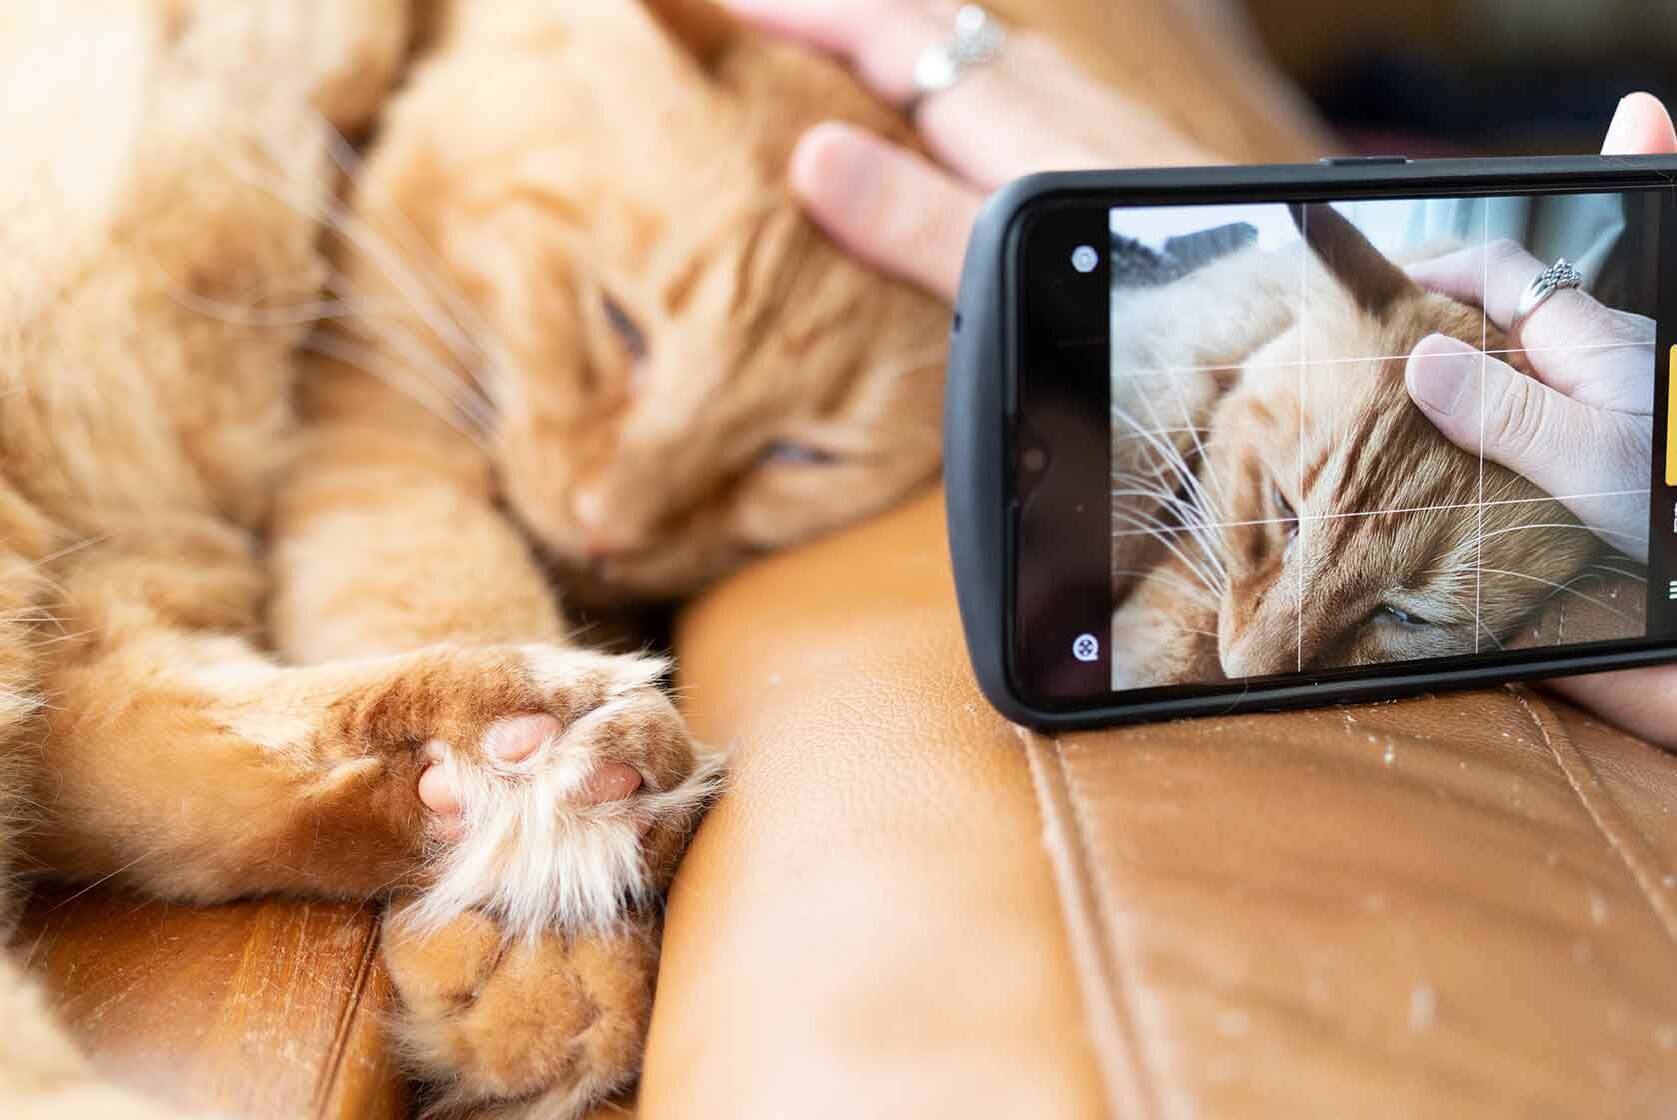 Auf einem Sofa liegende Katze wird mit einem Smartphone fotografiert.